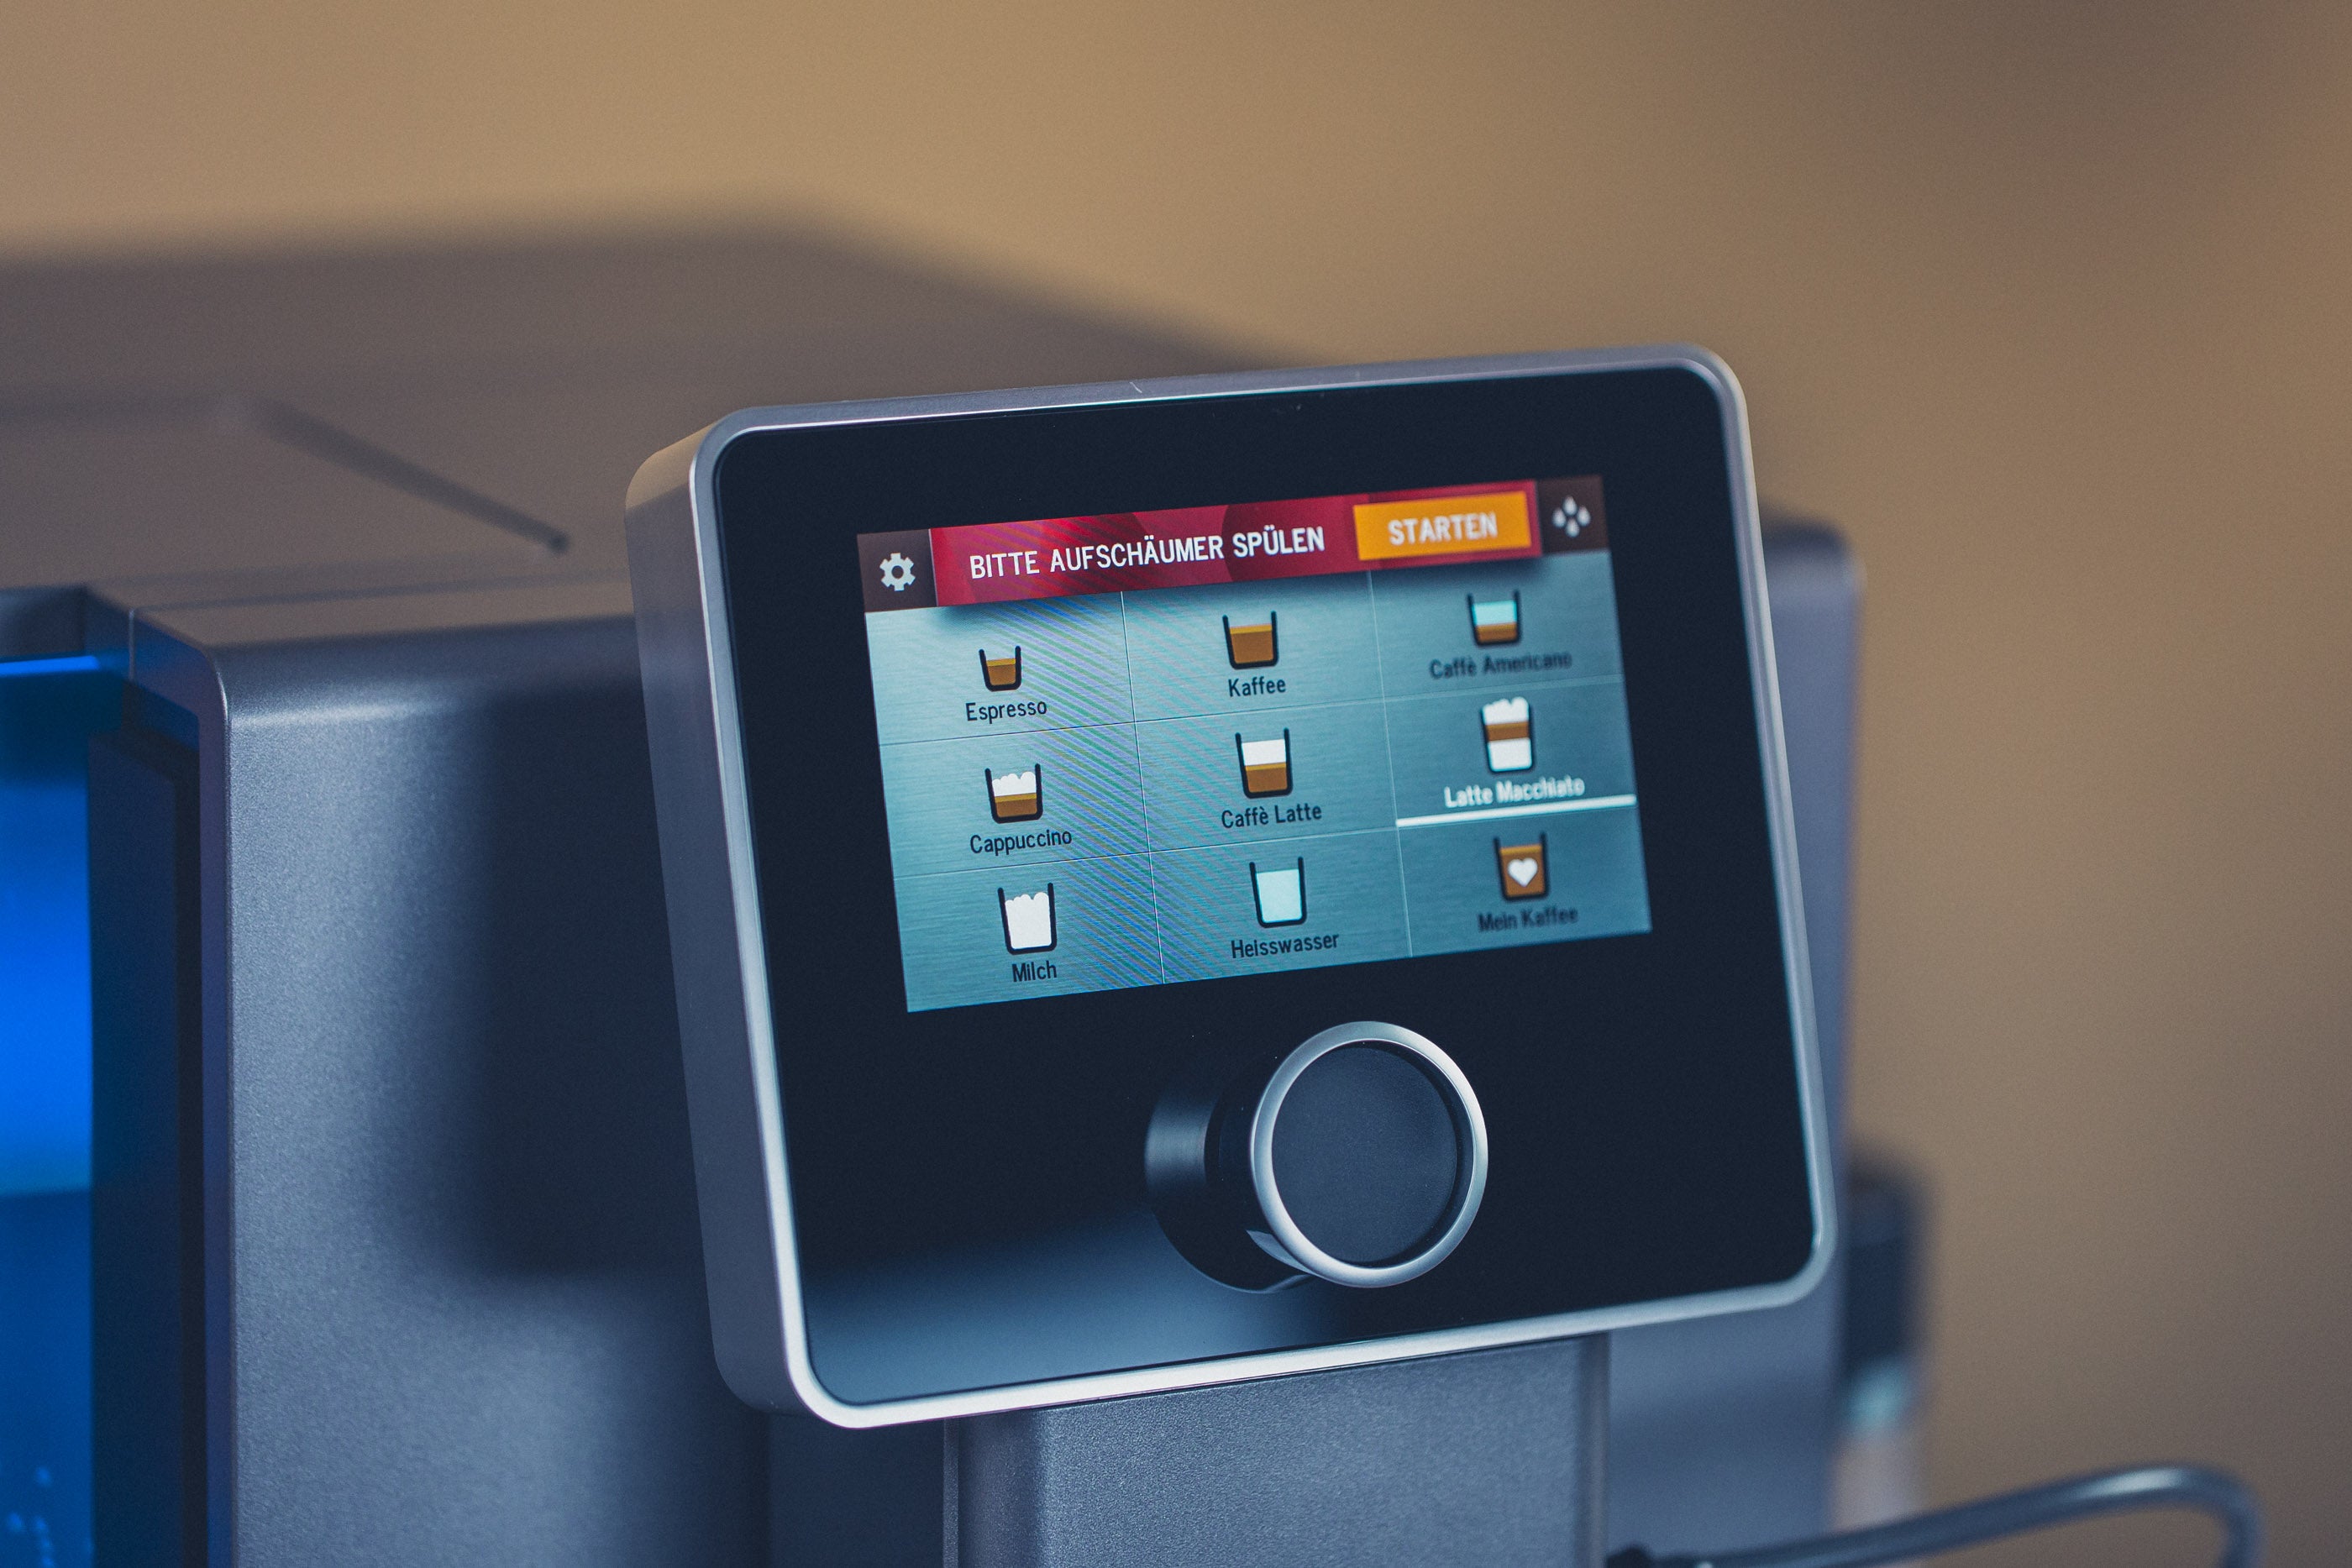 NICR 970 CafeRomatica visiškai automatinis espreso aparatas